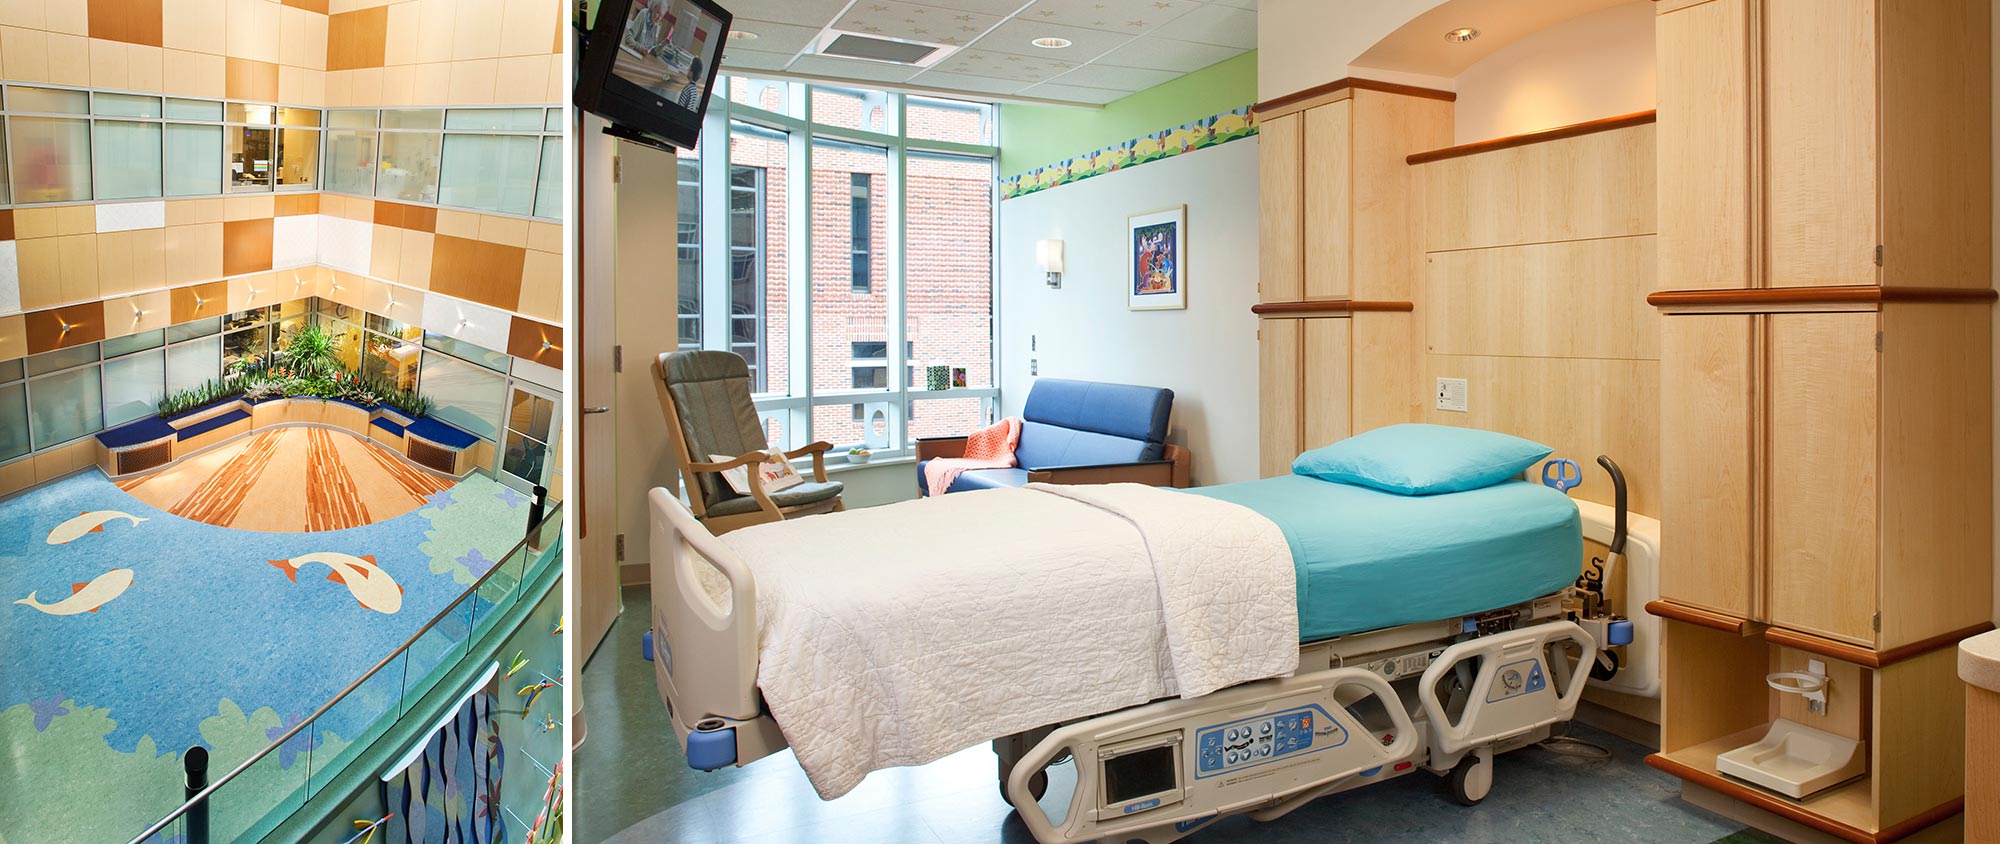 Monroe Carell Jr. Children’s Hospital at Vanderbilt 33 Bed Expansion